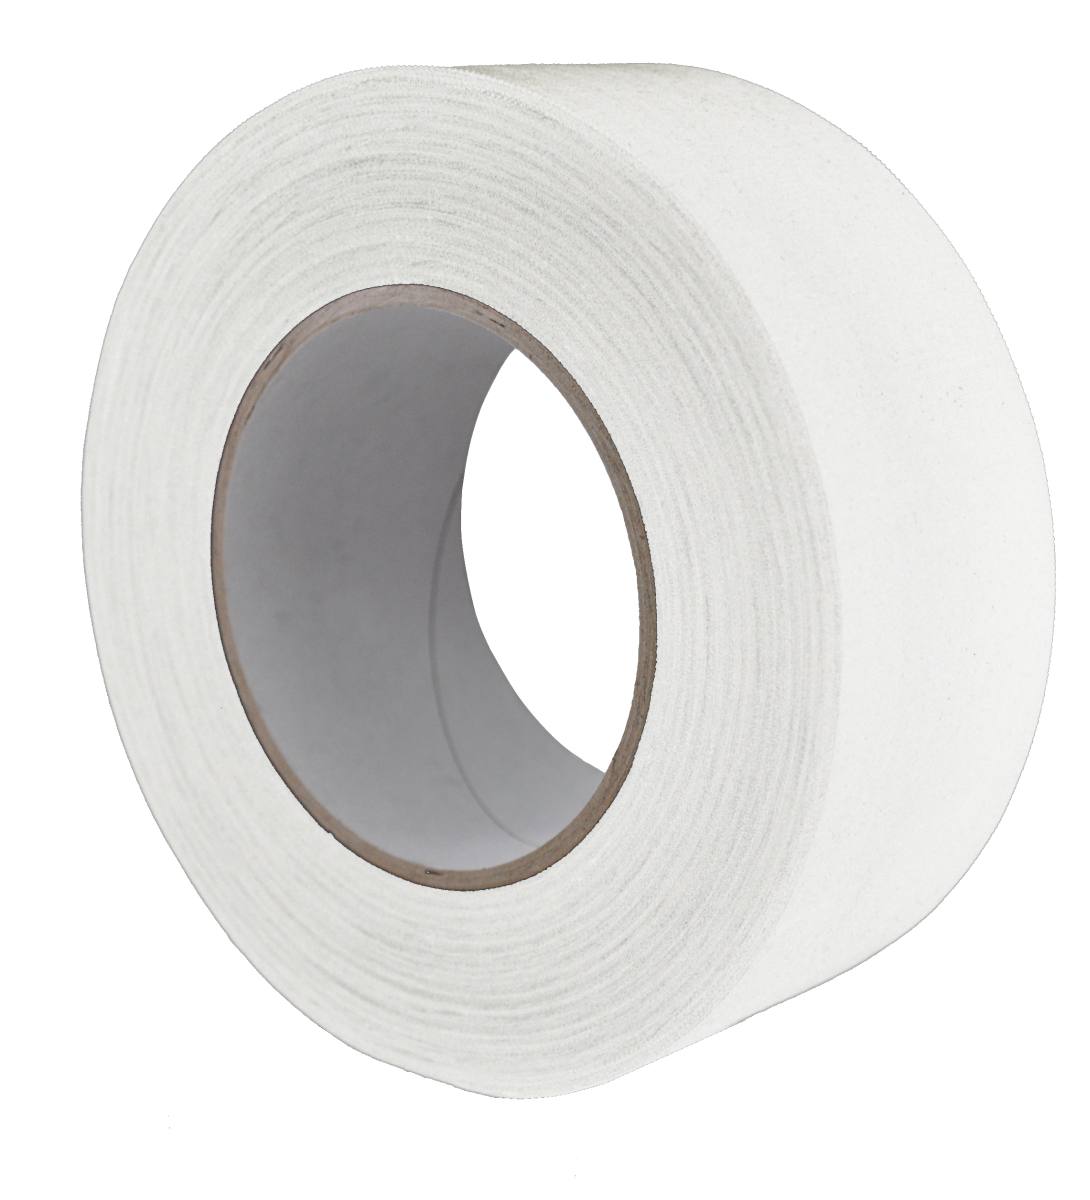 S-K-S 970 Raw fabric adhesive tape, 50 mm x 50 m, white, 0.240 mm